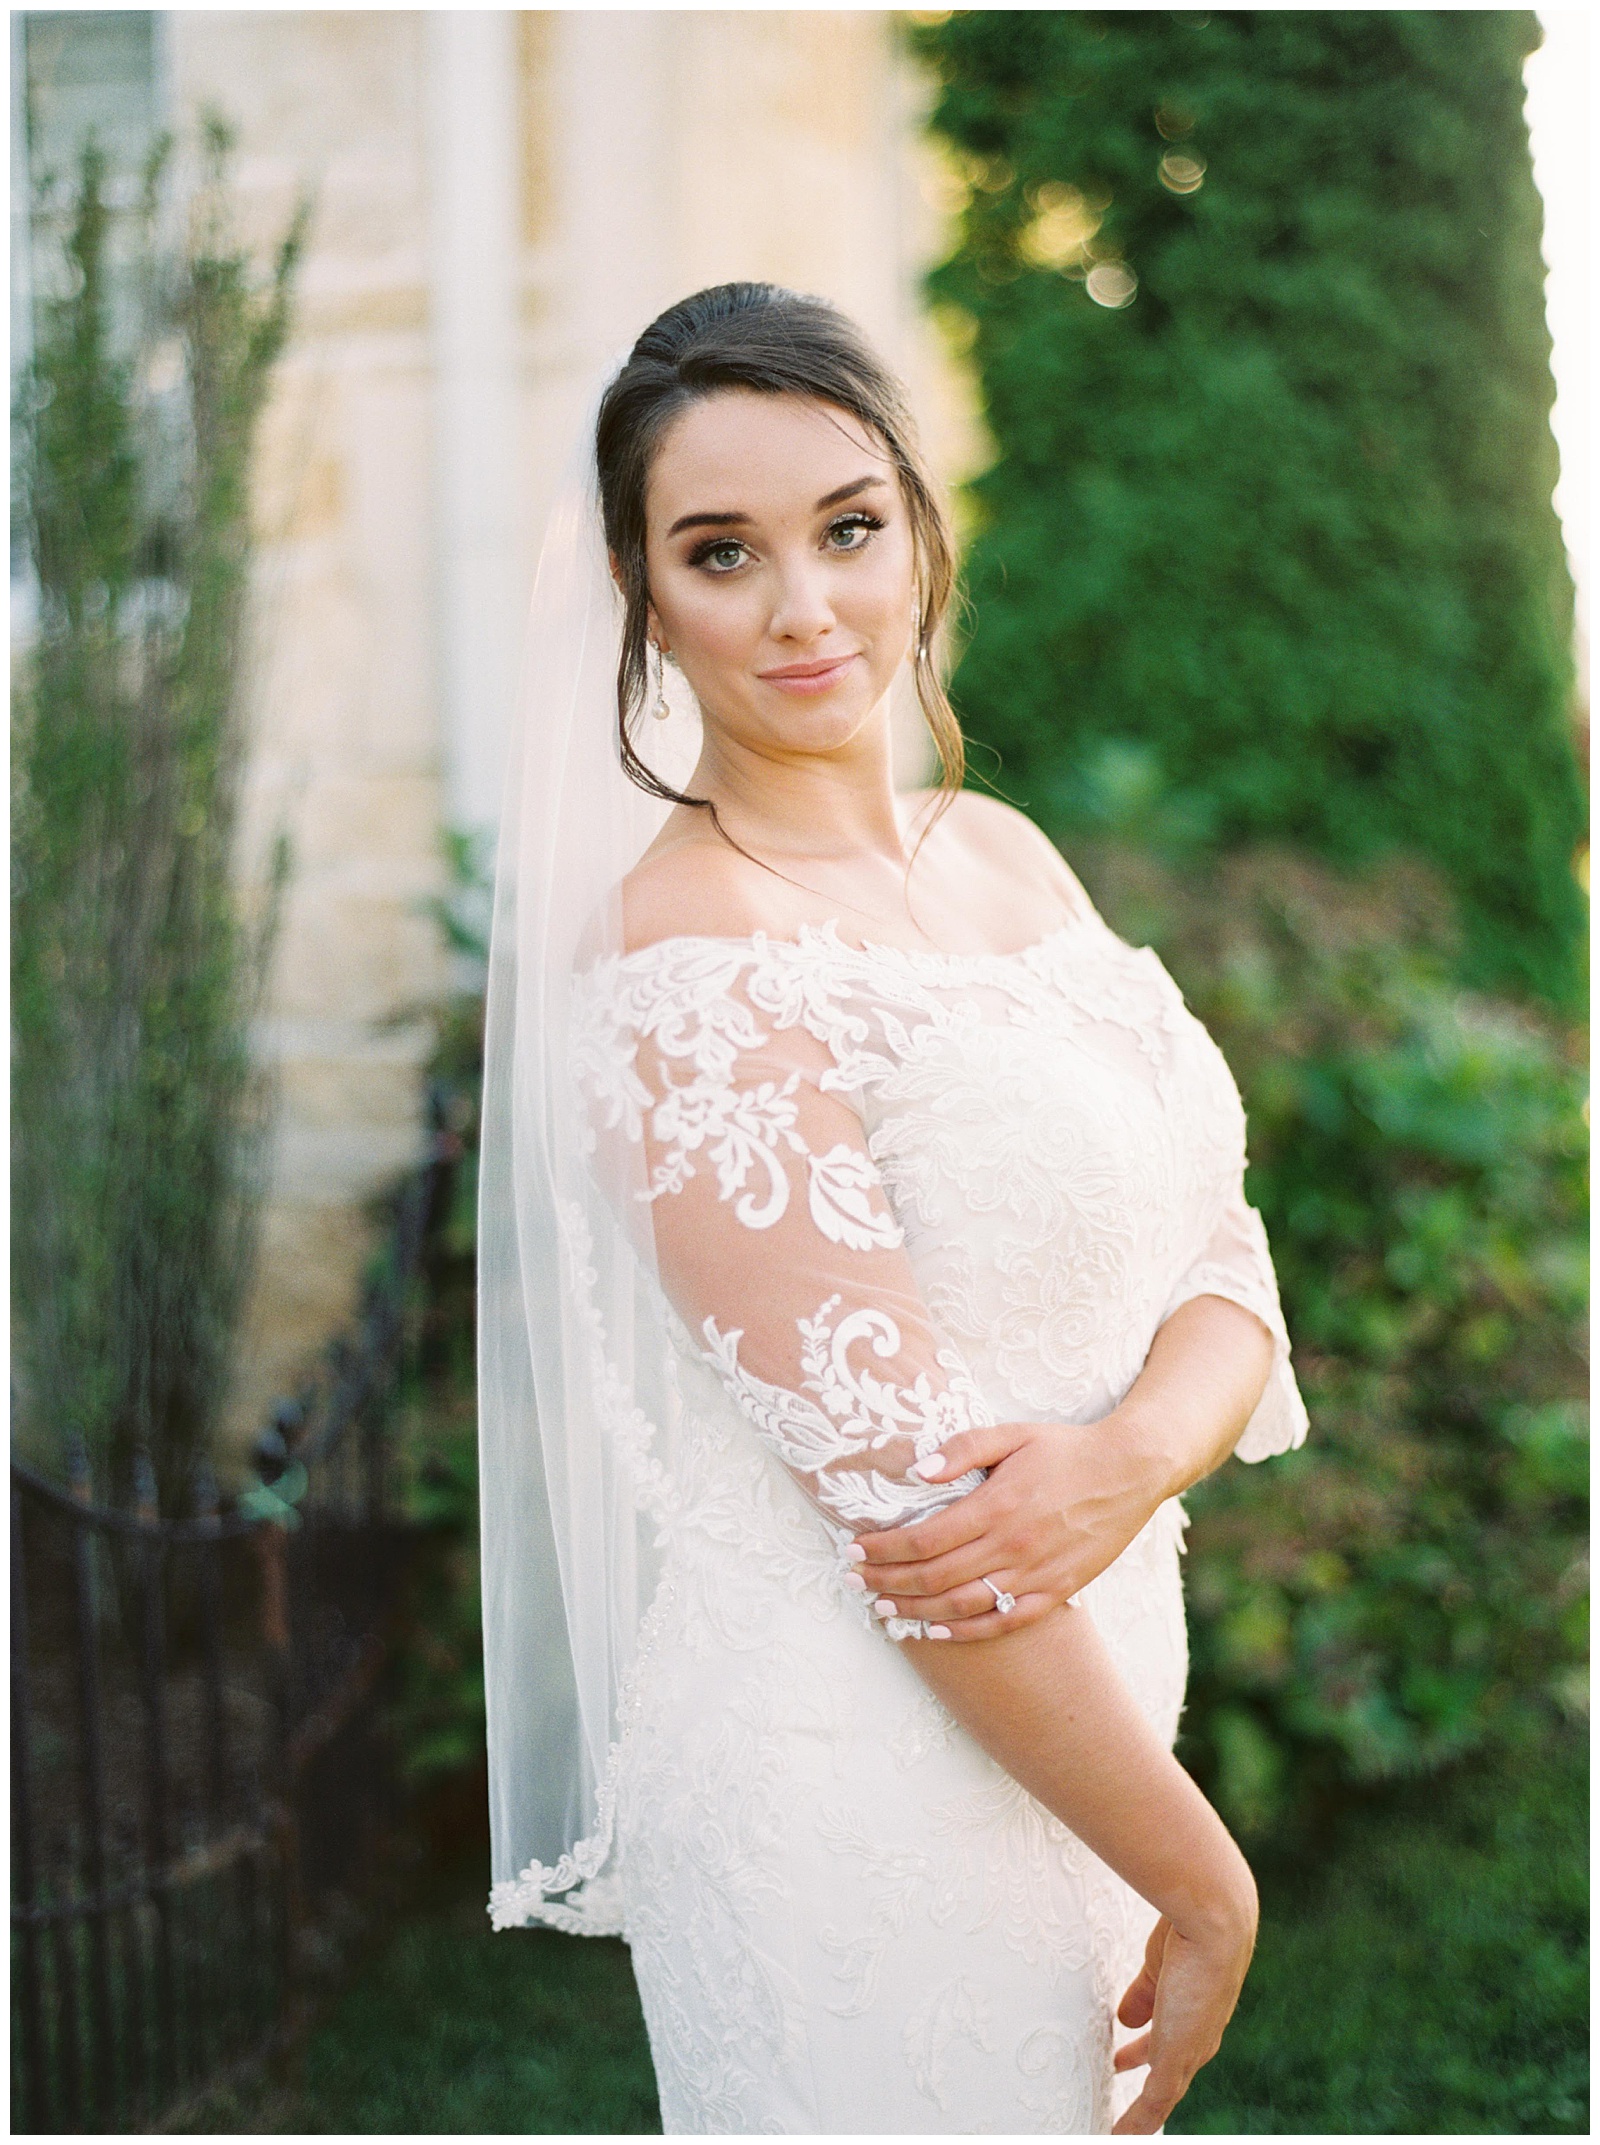 Danielle-Defayette-Photography-Wedding-Day-Essentials_0002.jpg